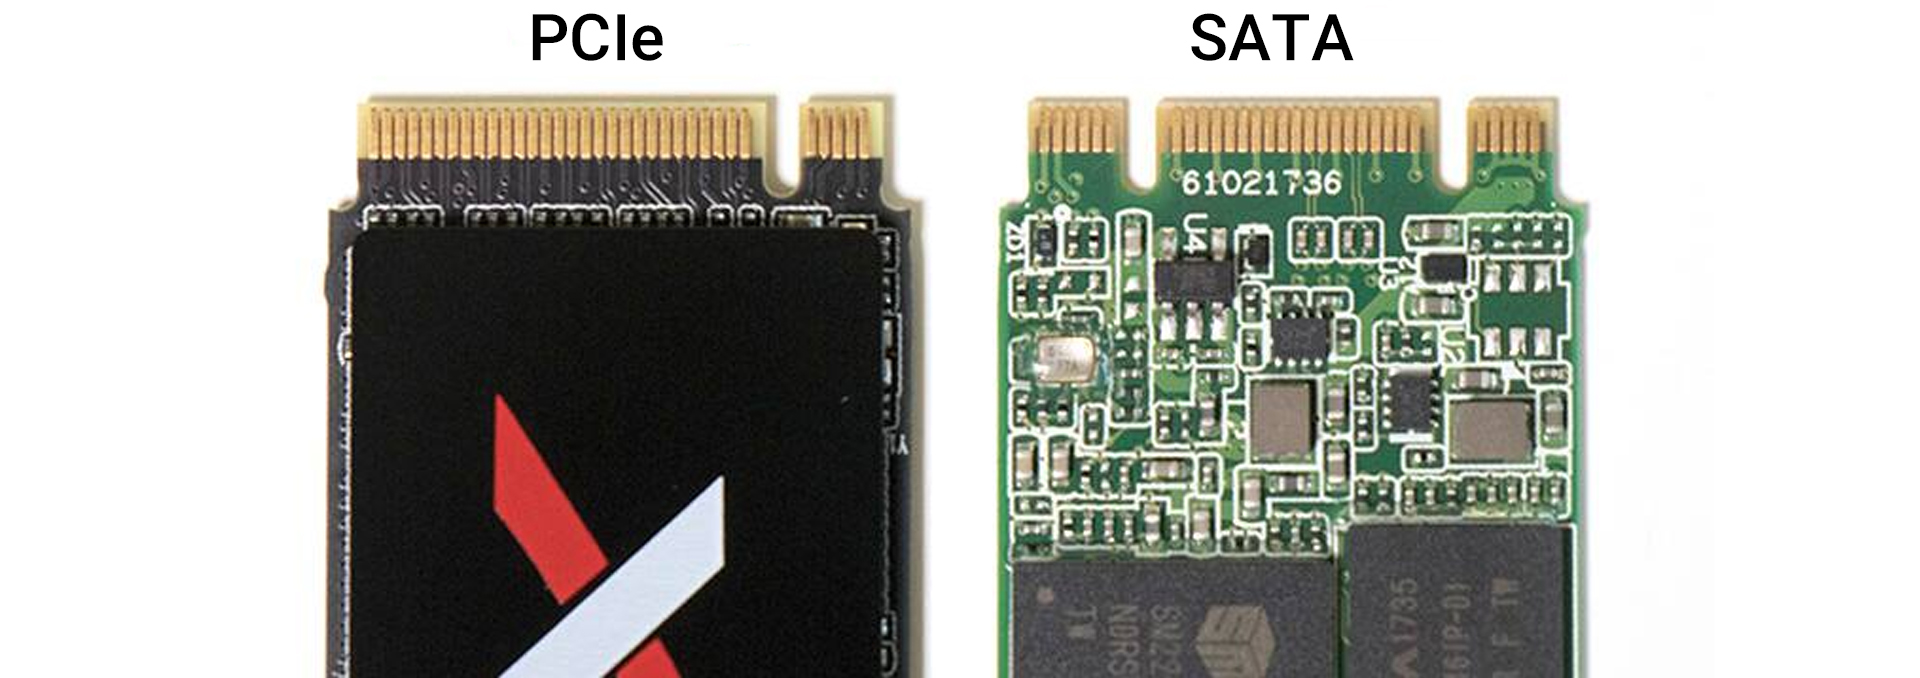 مقایسه رابط SATA با PCIe اس اس دی